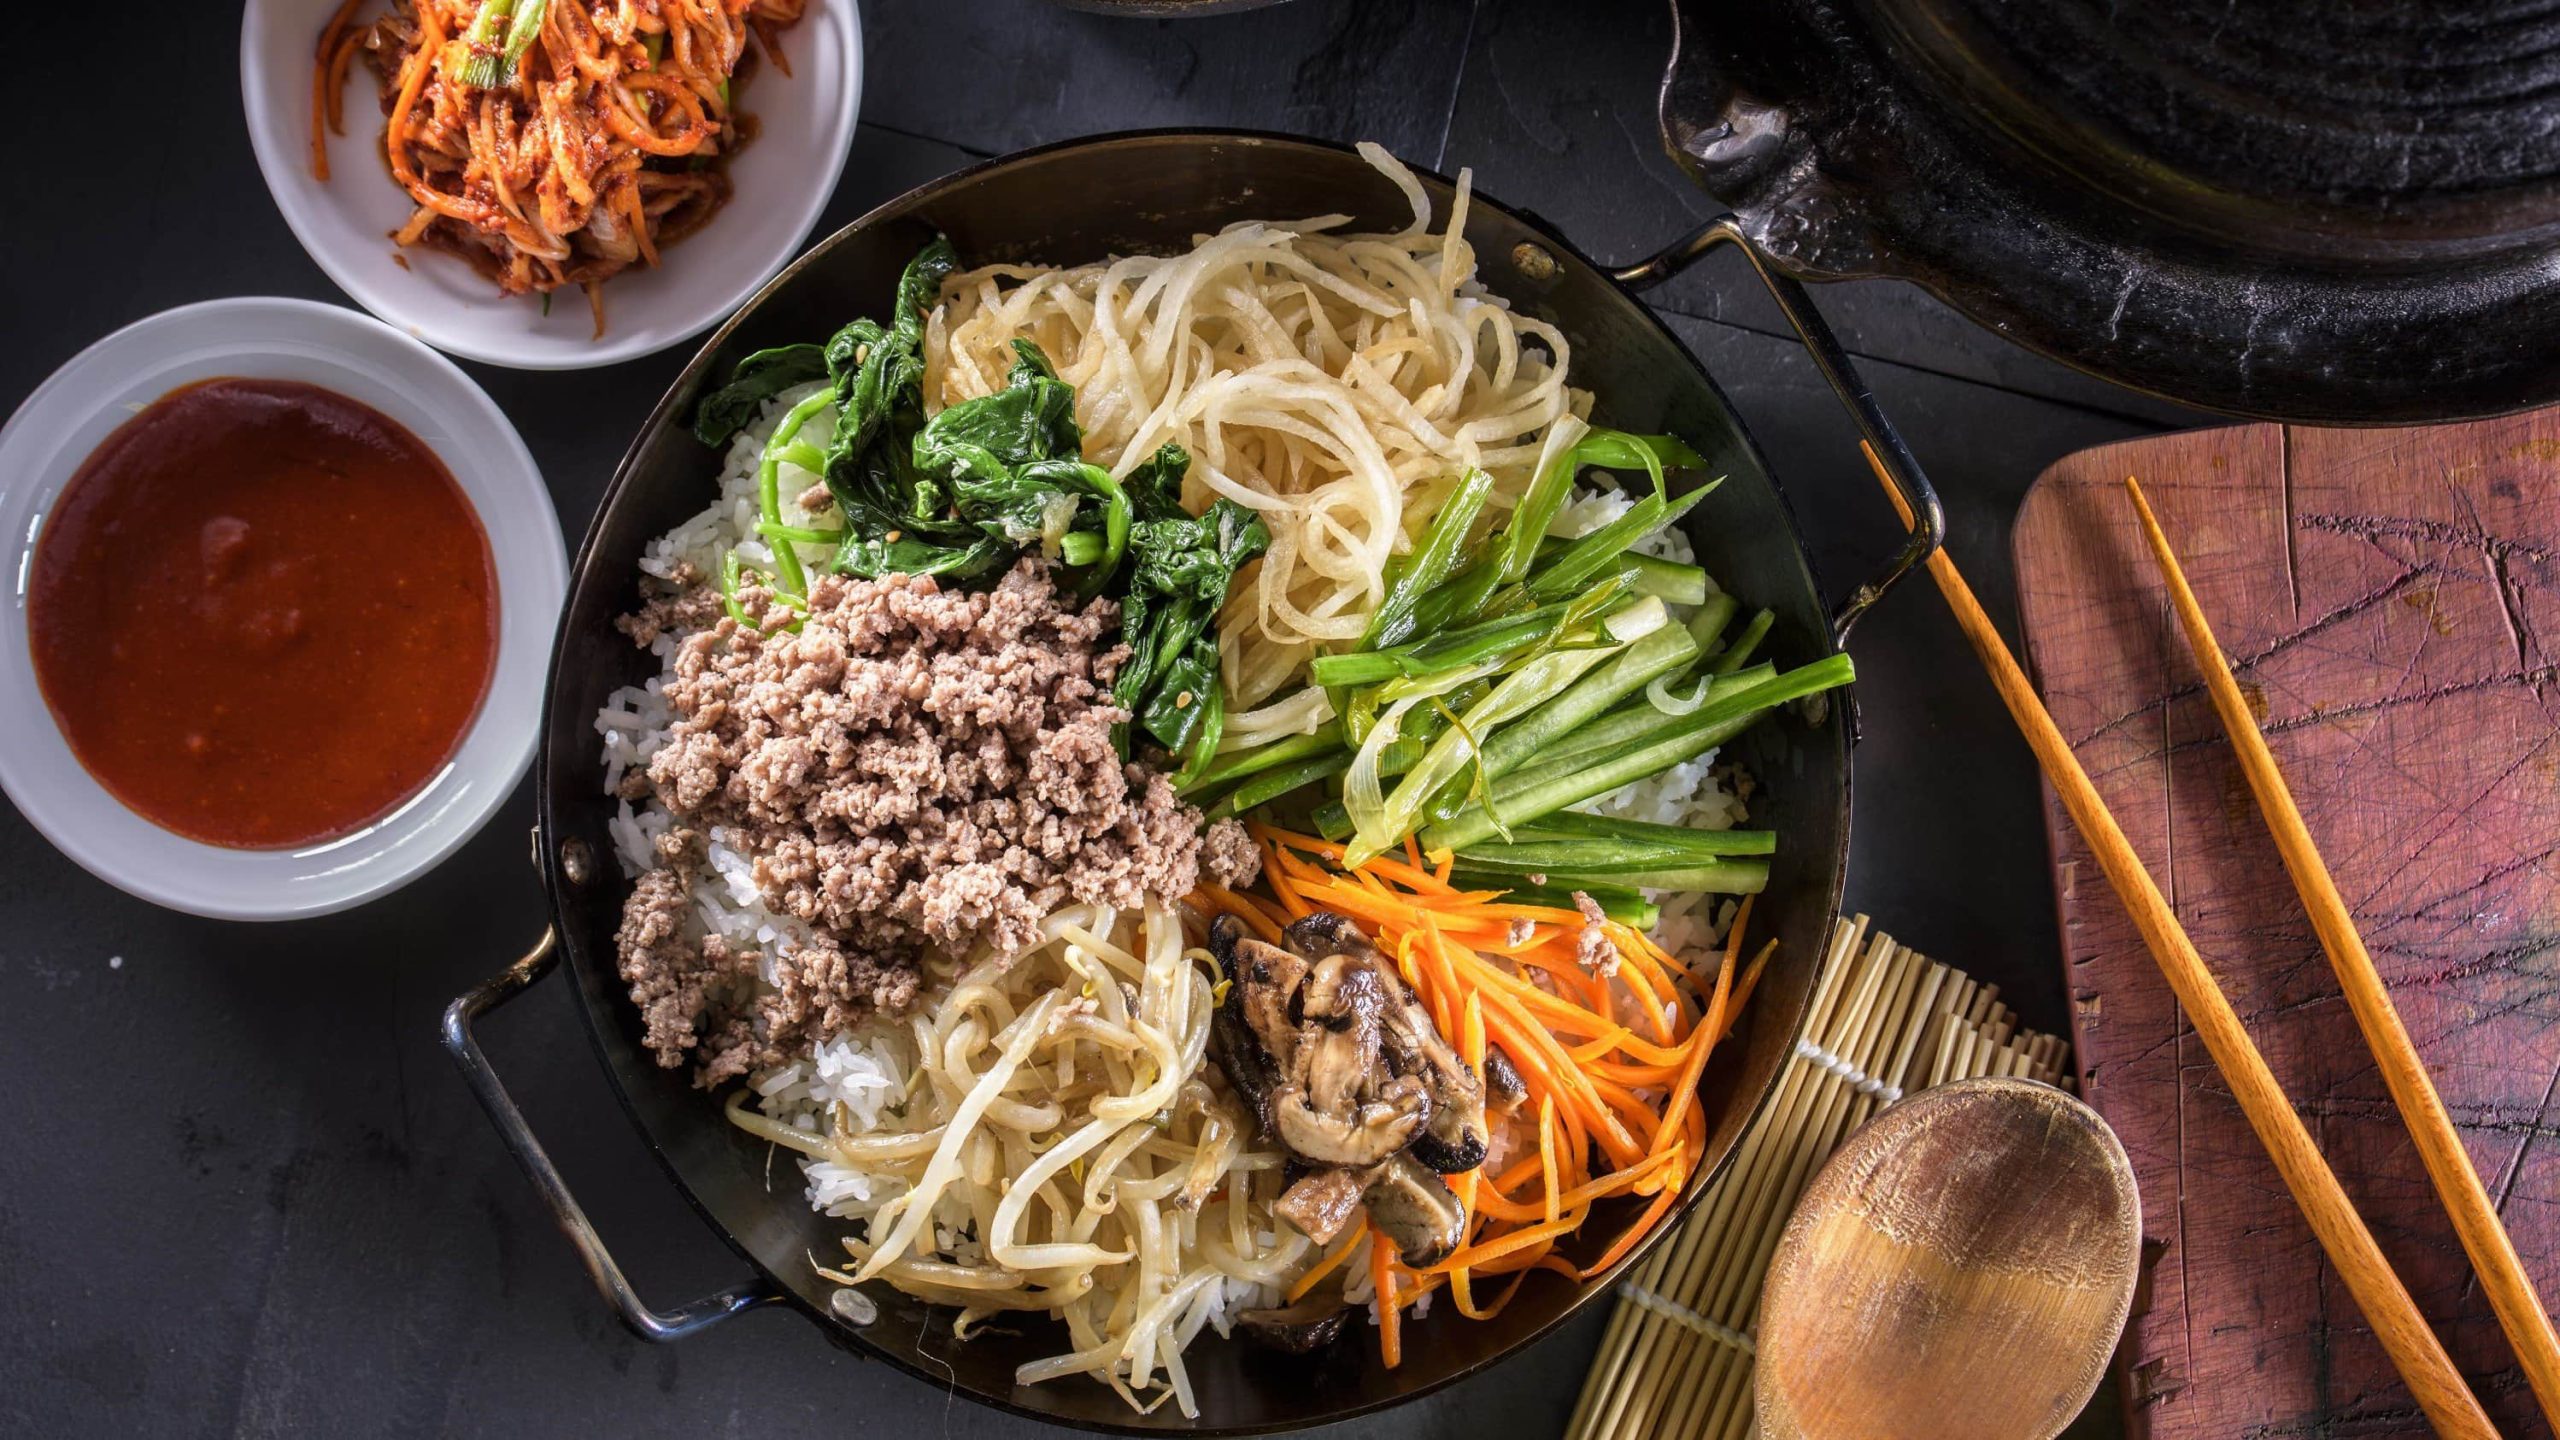 Koreanisches Bibimbap, bestehend aus Karotten, Pilzen, Rettich, veganem Hackfleisch, Gurke, Karotte und Sprossen auf einem Bett aus Reis in einer schwarzen Schale, dazu Chili-Sauce und Kimchi